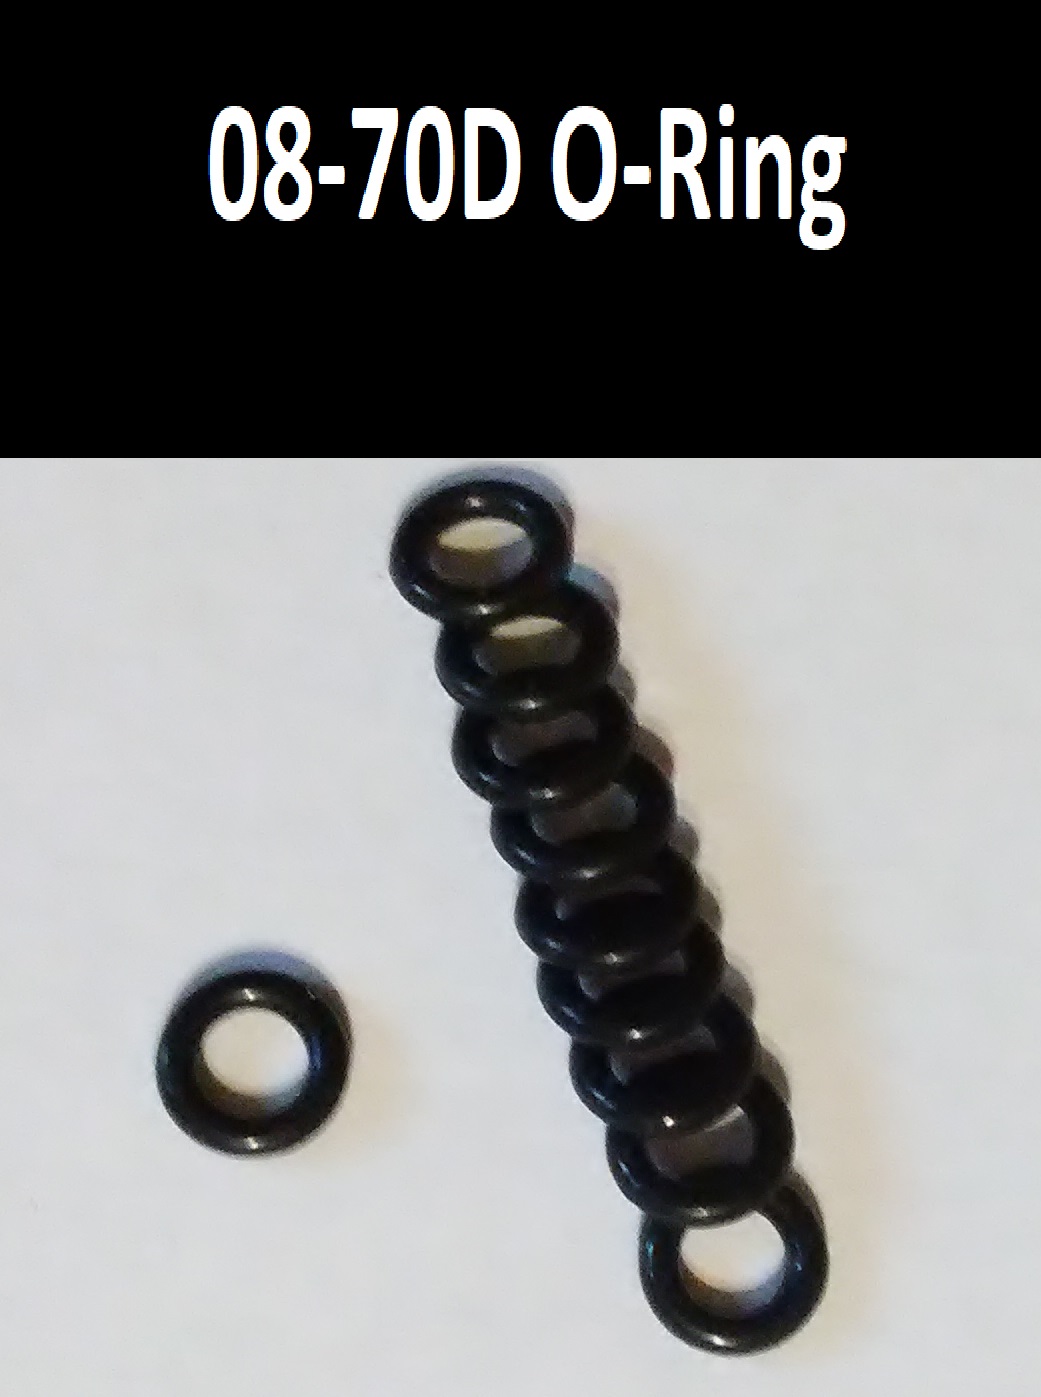 08-70D O-Ring